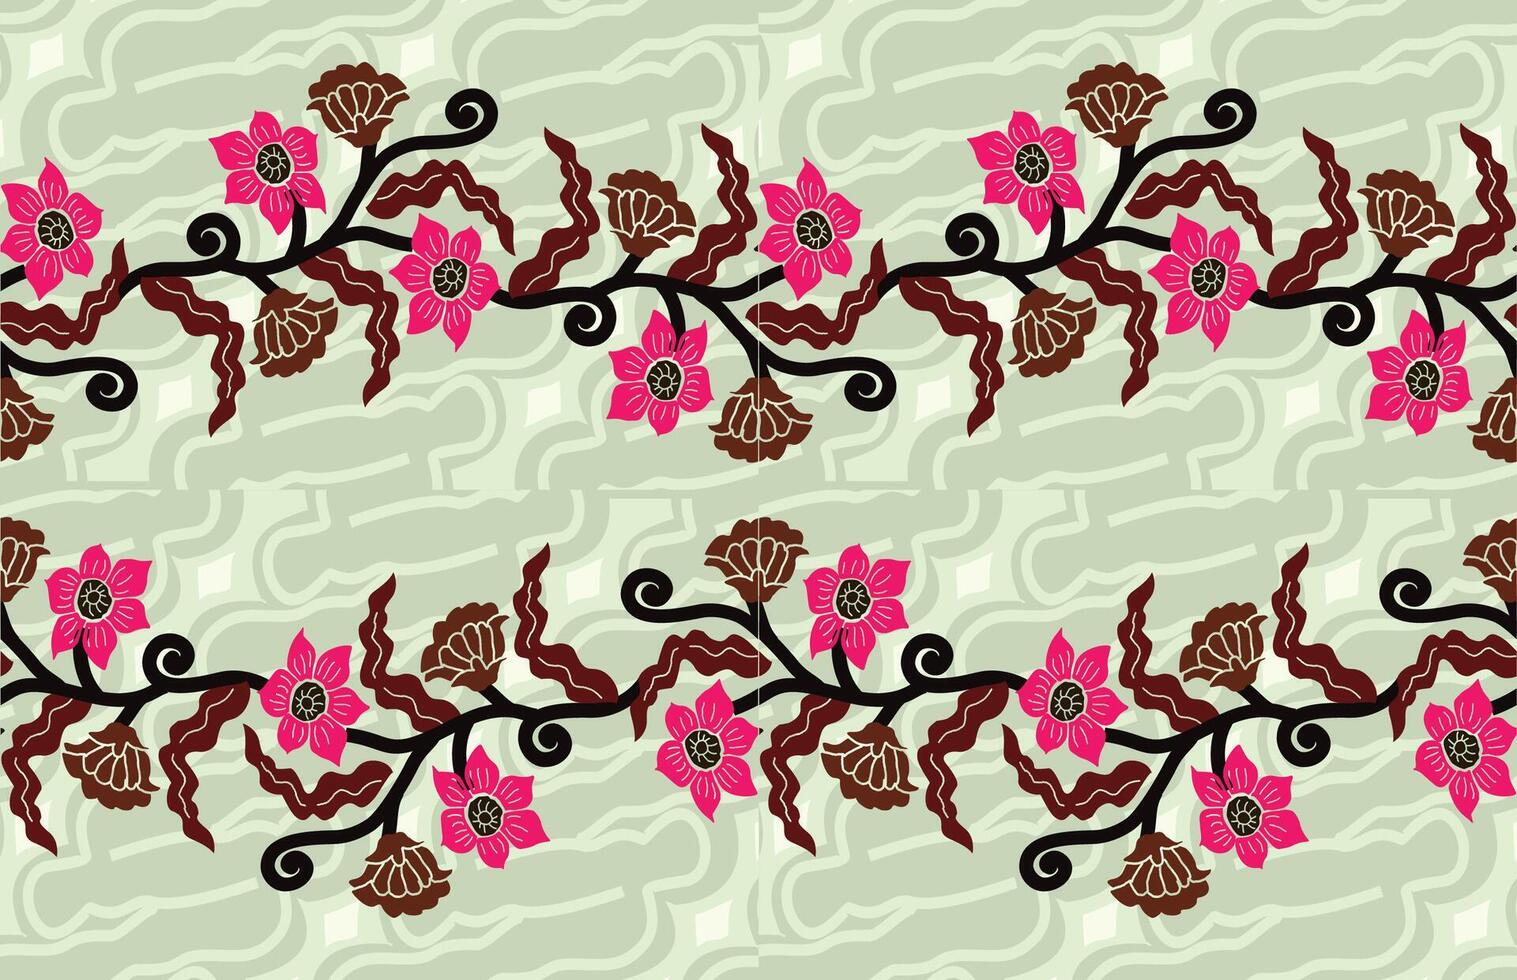 impreso indonesio batik motivos con exclusivo y clásico balinés estilo floral y planta patrones son adecuado para varios propósitos. eps 10 vector